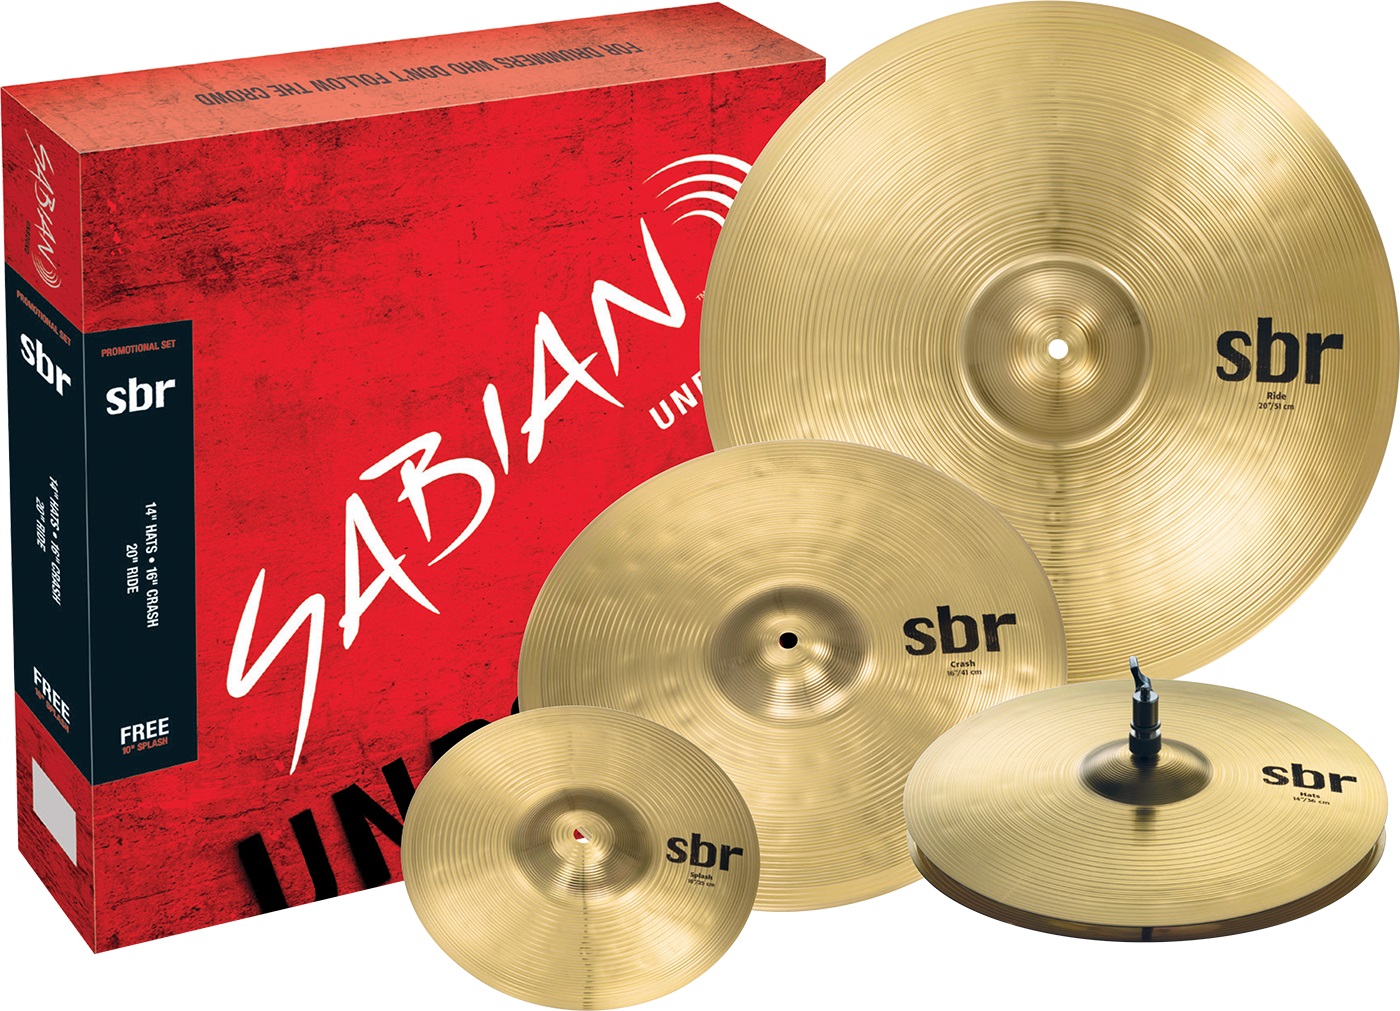 Тарелки, барабаны для ударных установок Sabian SBr Promotional Pack тарелки барабаны для ударных установок paiste 18 101 brass crash ride